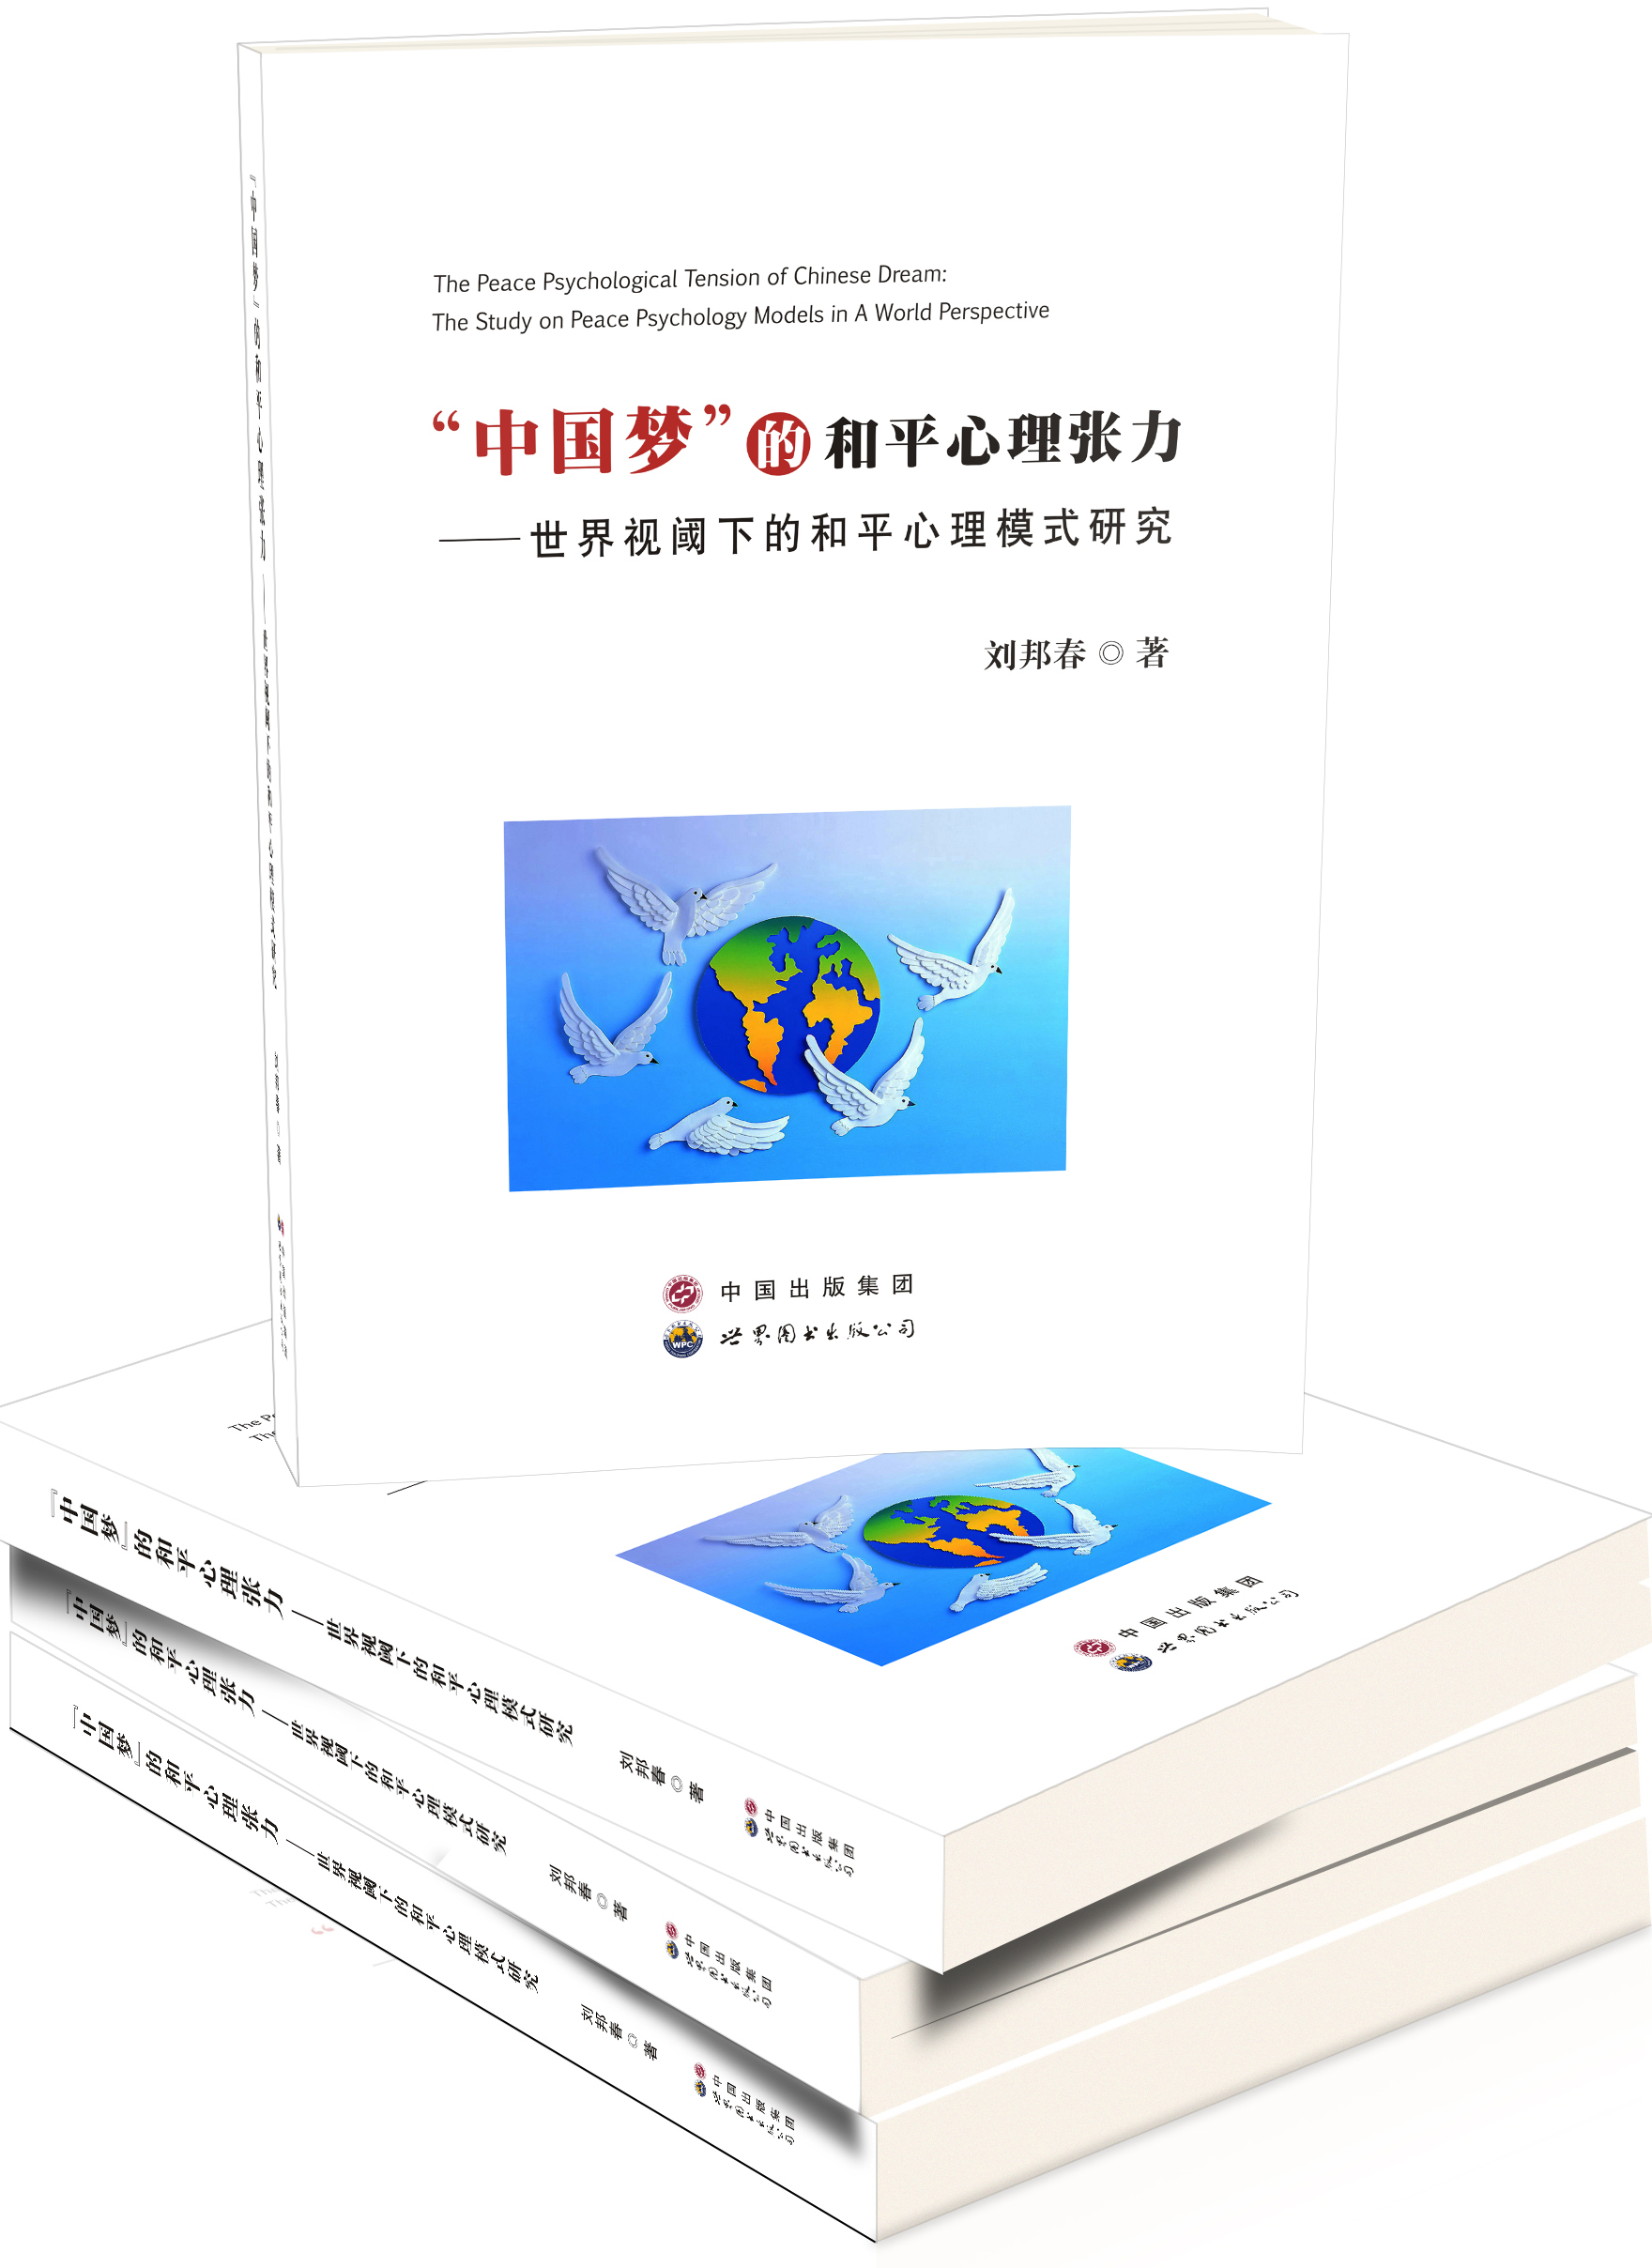 “中国梦”的和平心理张力-国际视阈下的和平心理模式研究